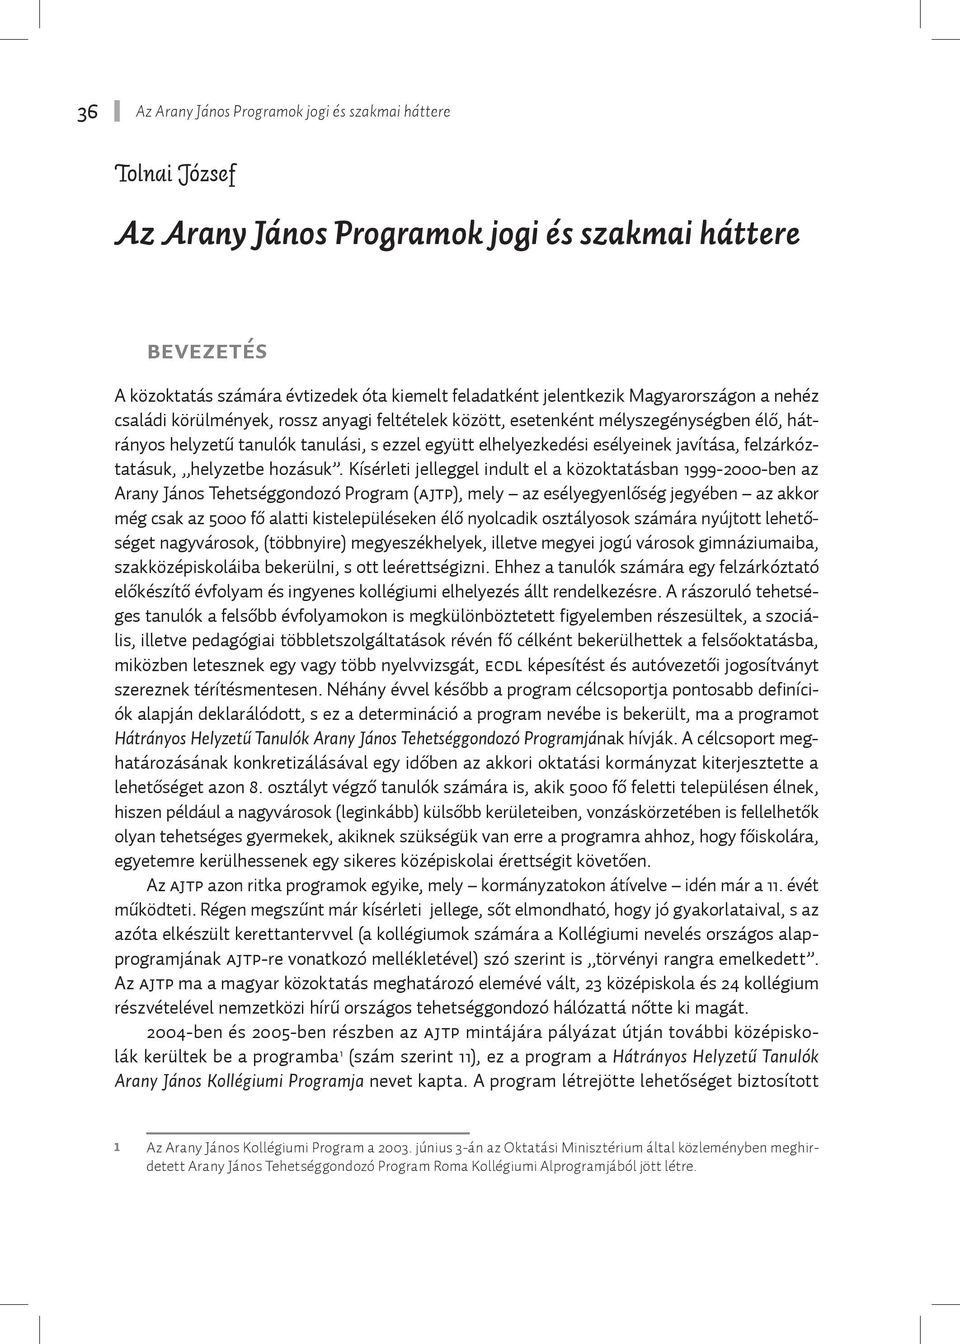 Az Arany János Programok jogi és szakmai háttere - PDF Ingyenes letöltés